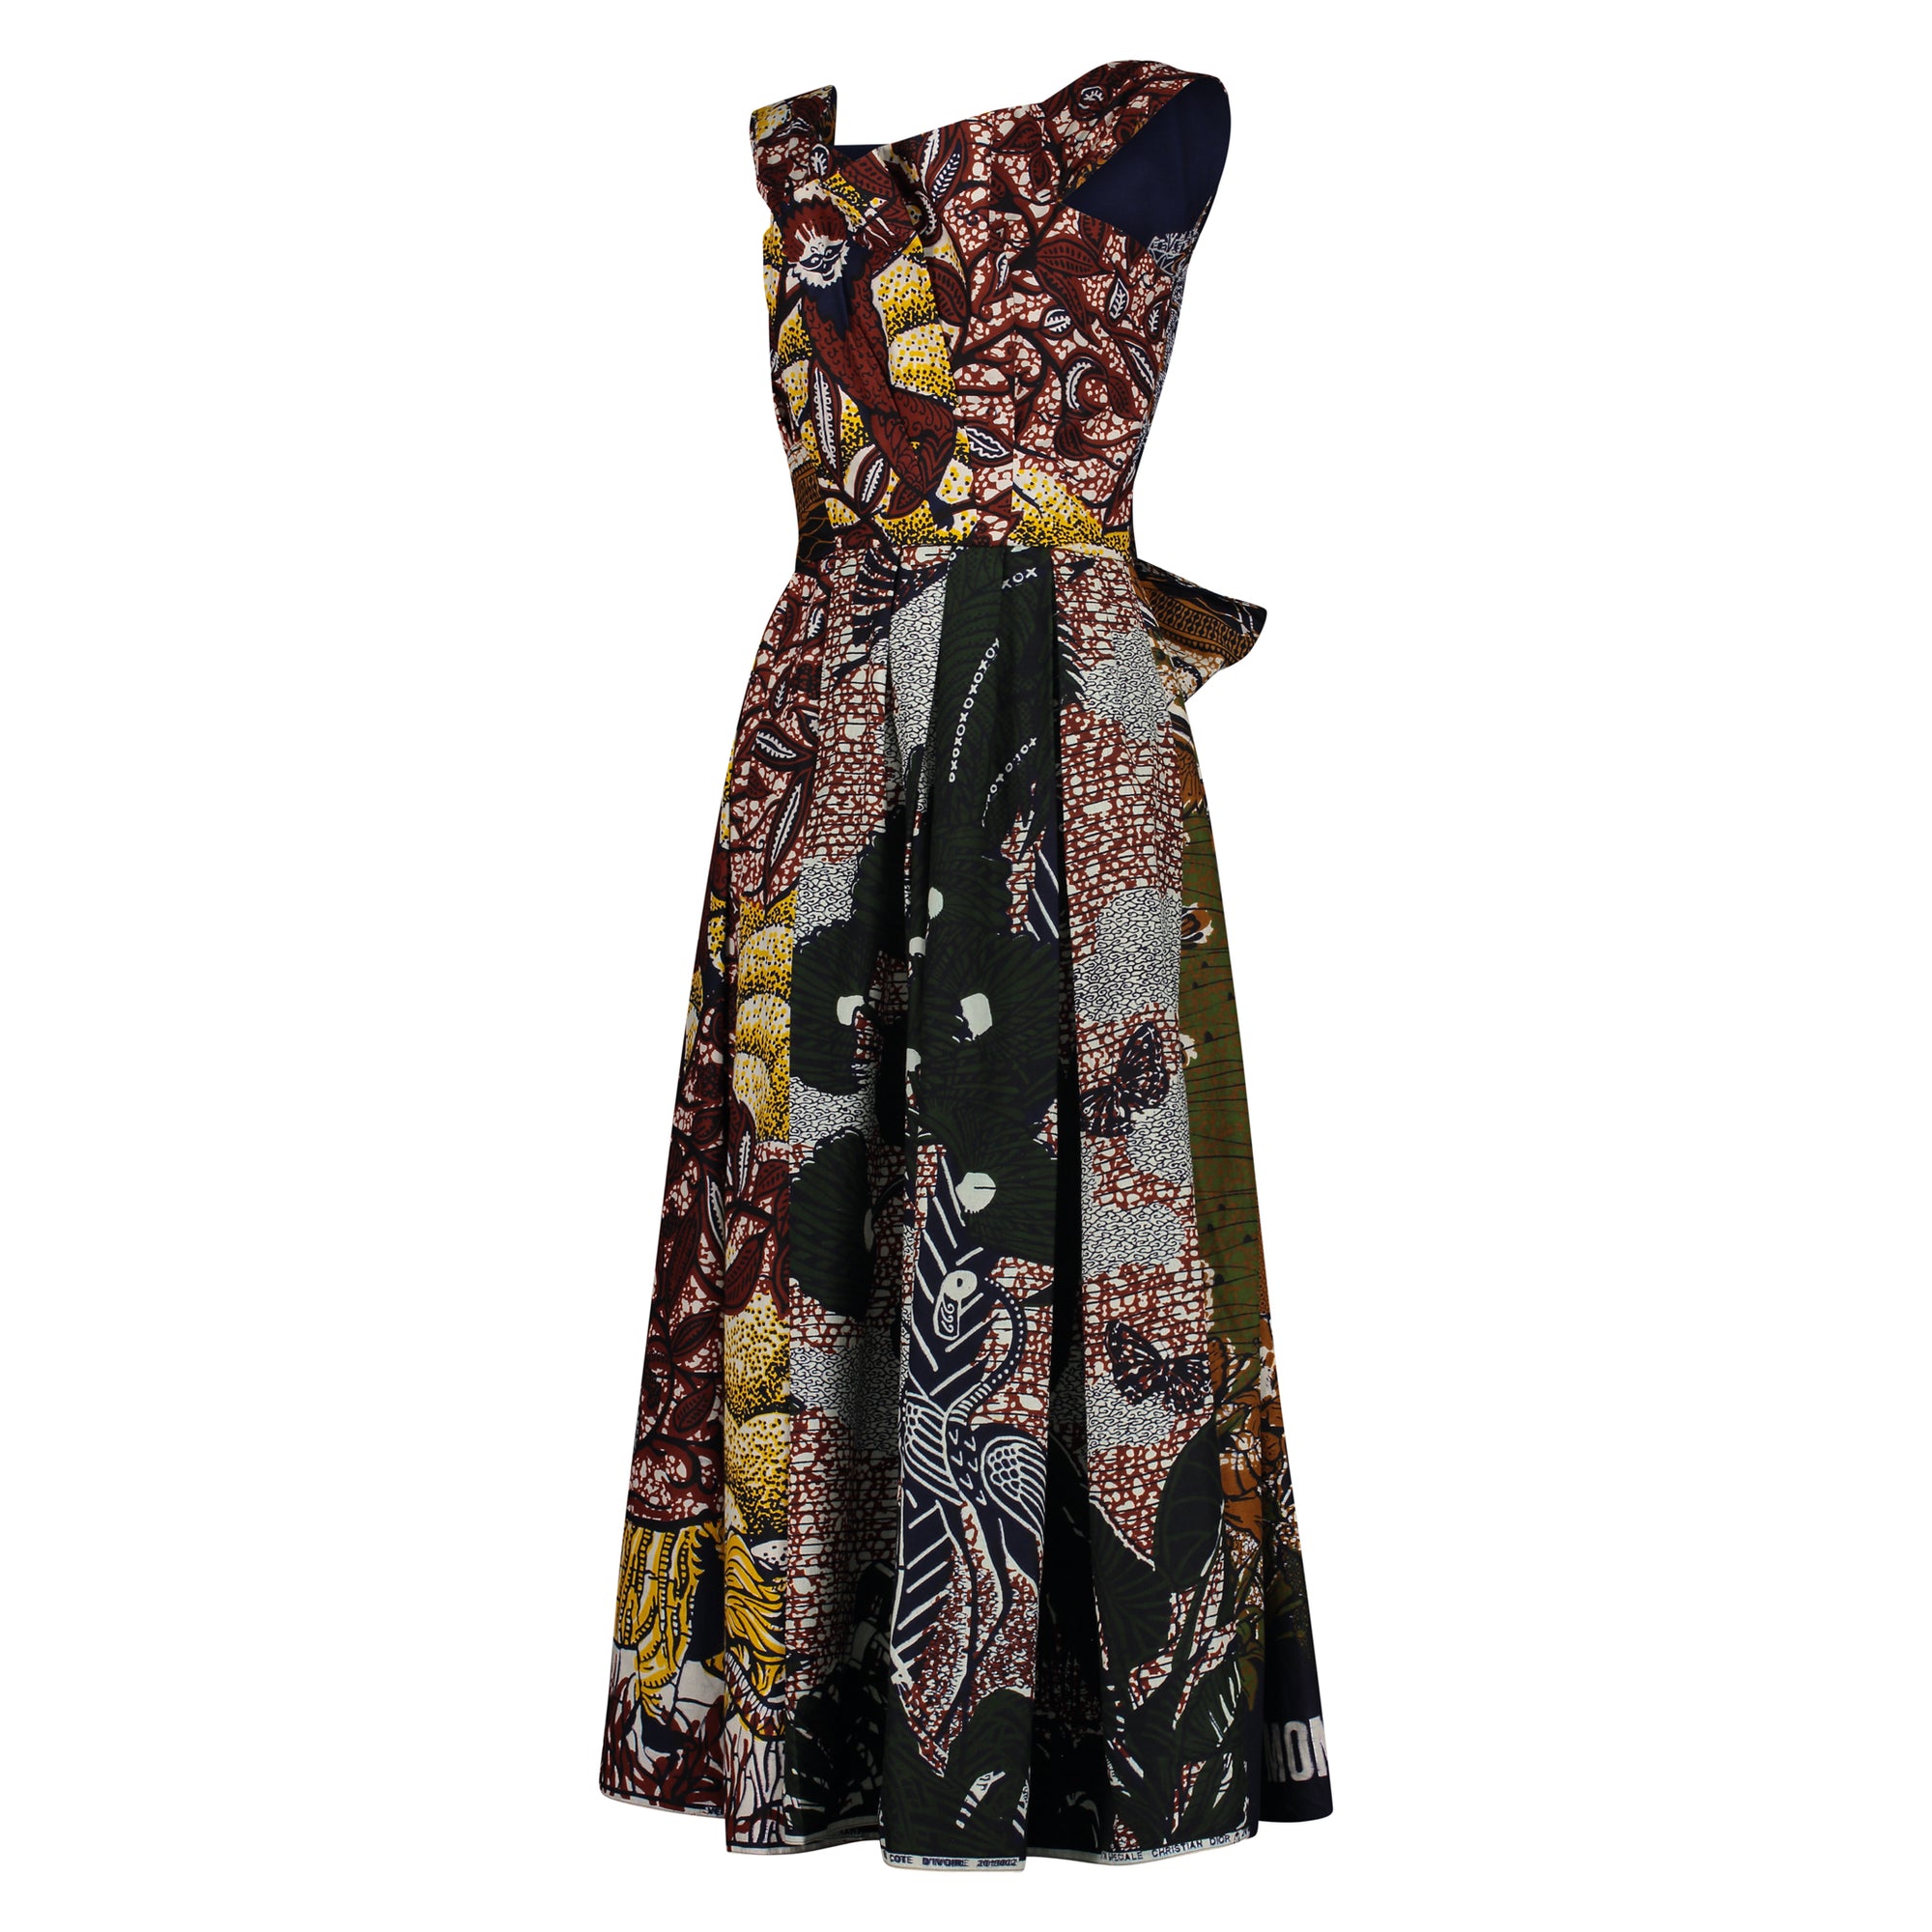 Louis Vuitton Knit Dress - Dream Closet by Sira Pevida